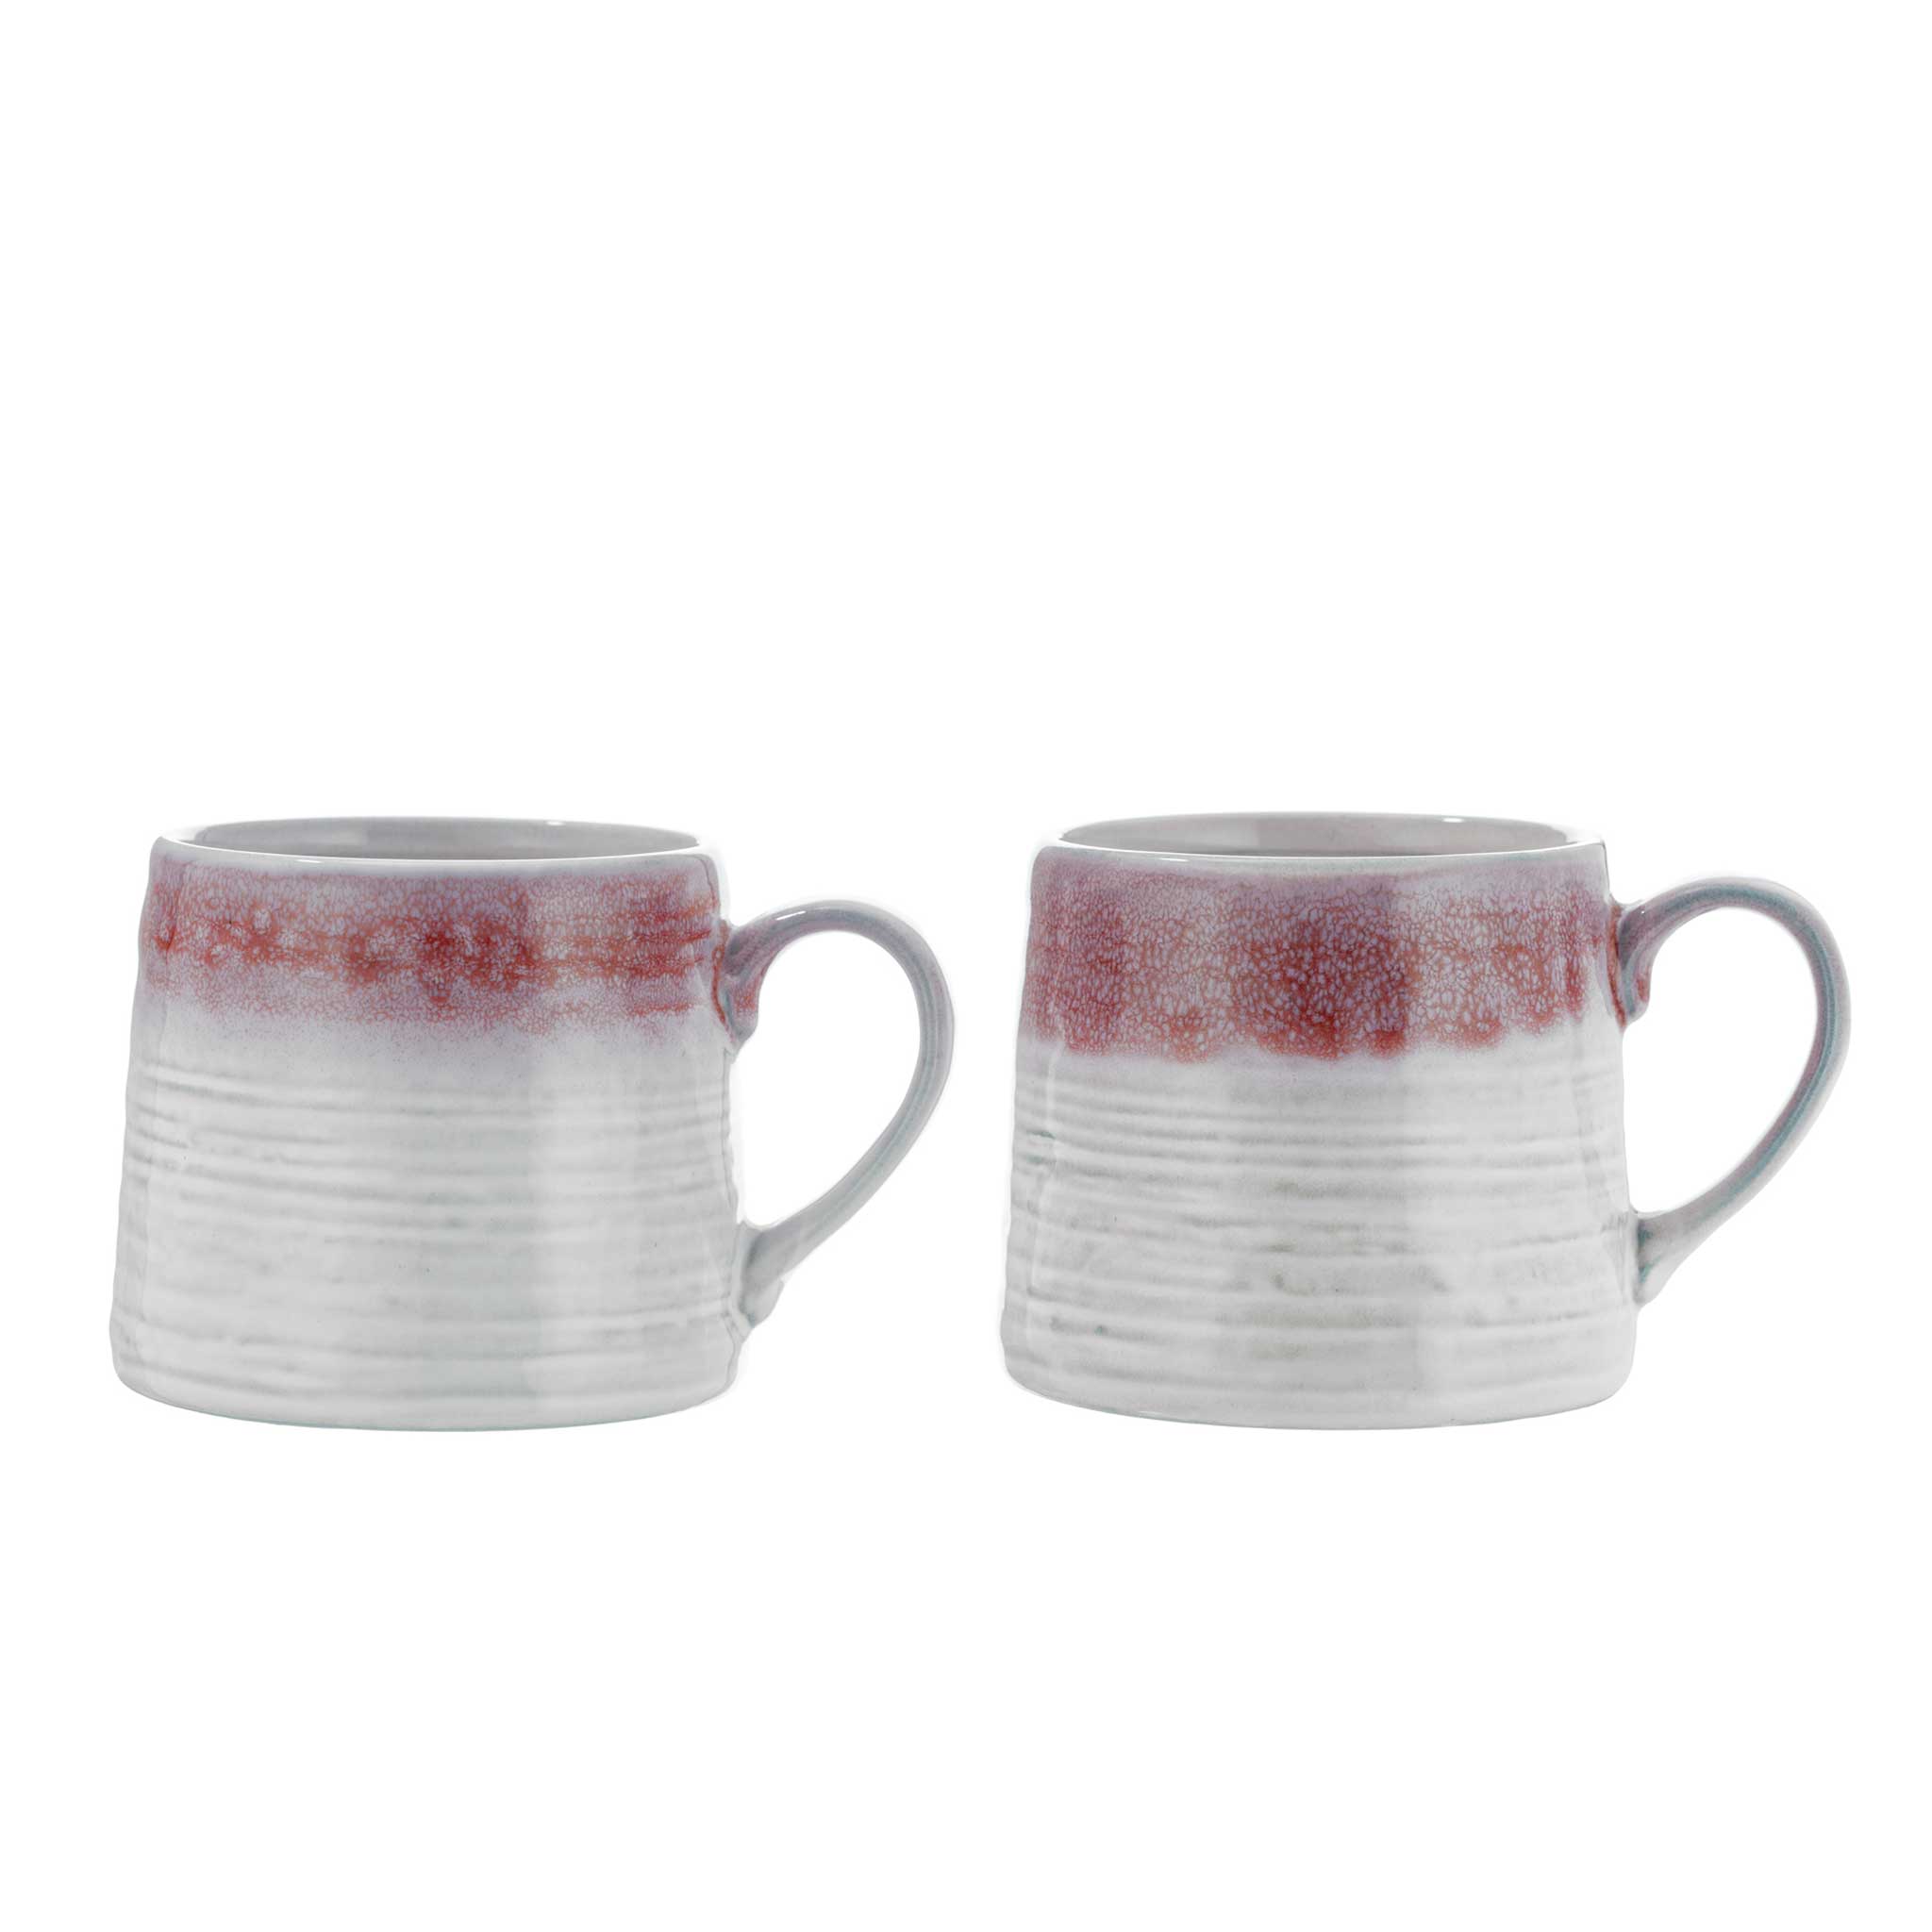 Red & Grey Glaze Mug Set from China Blue